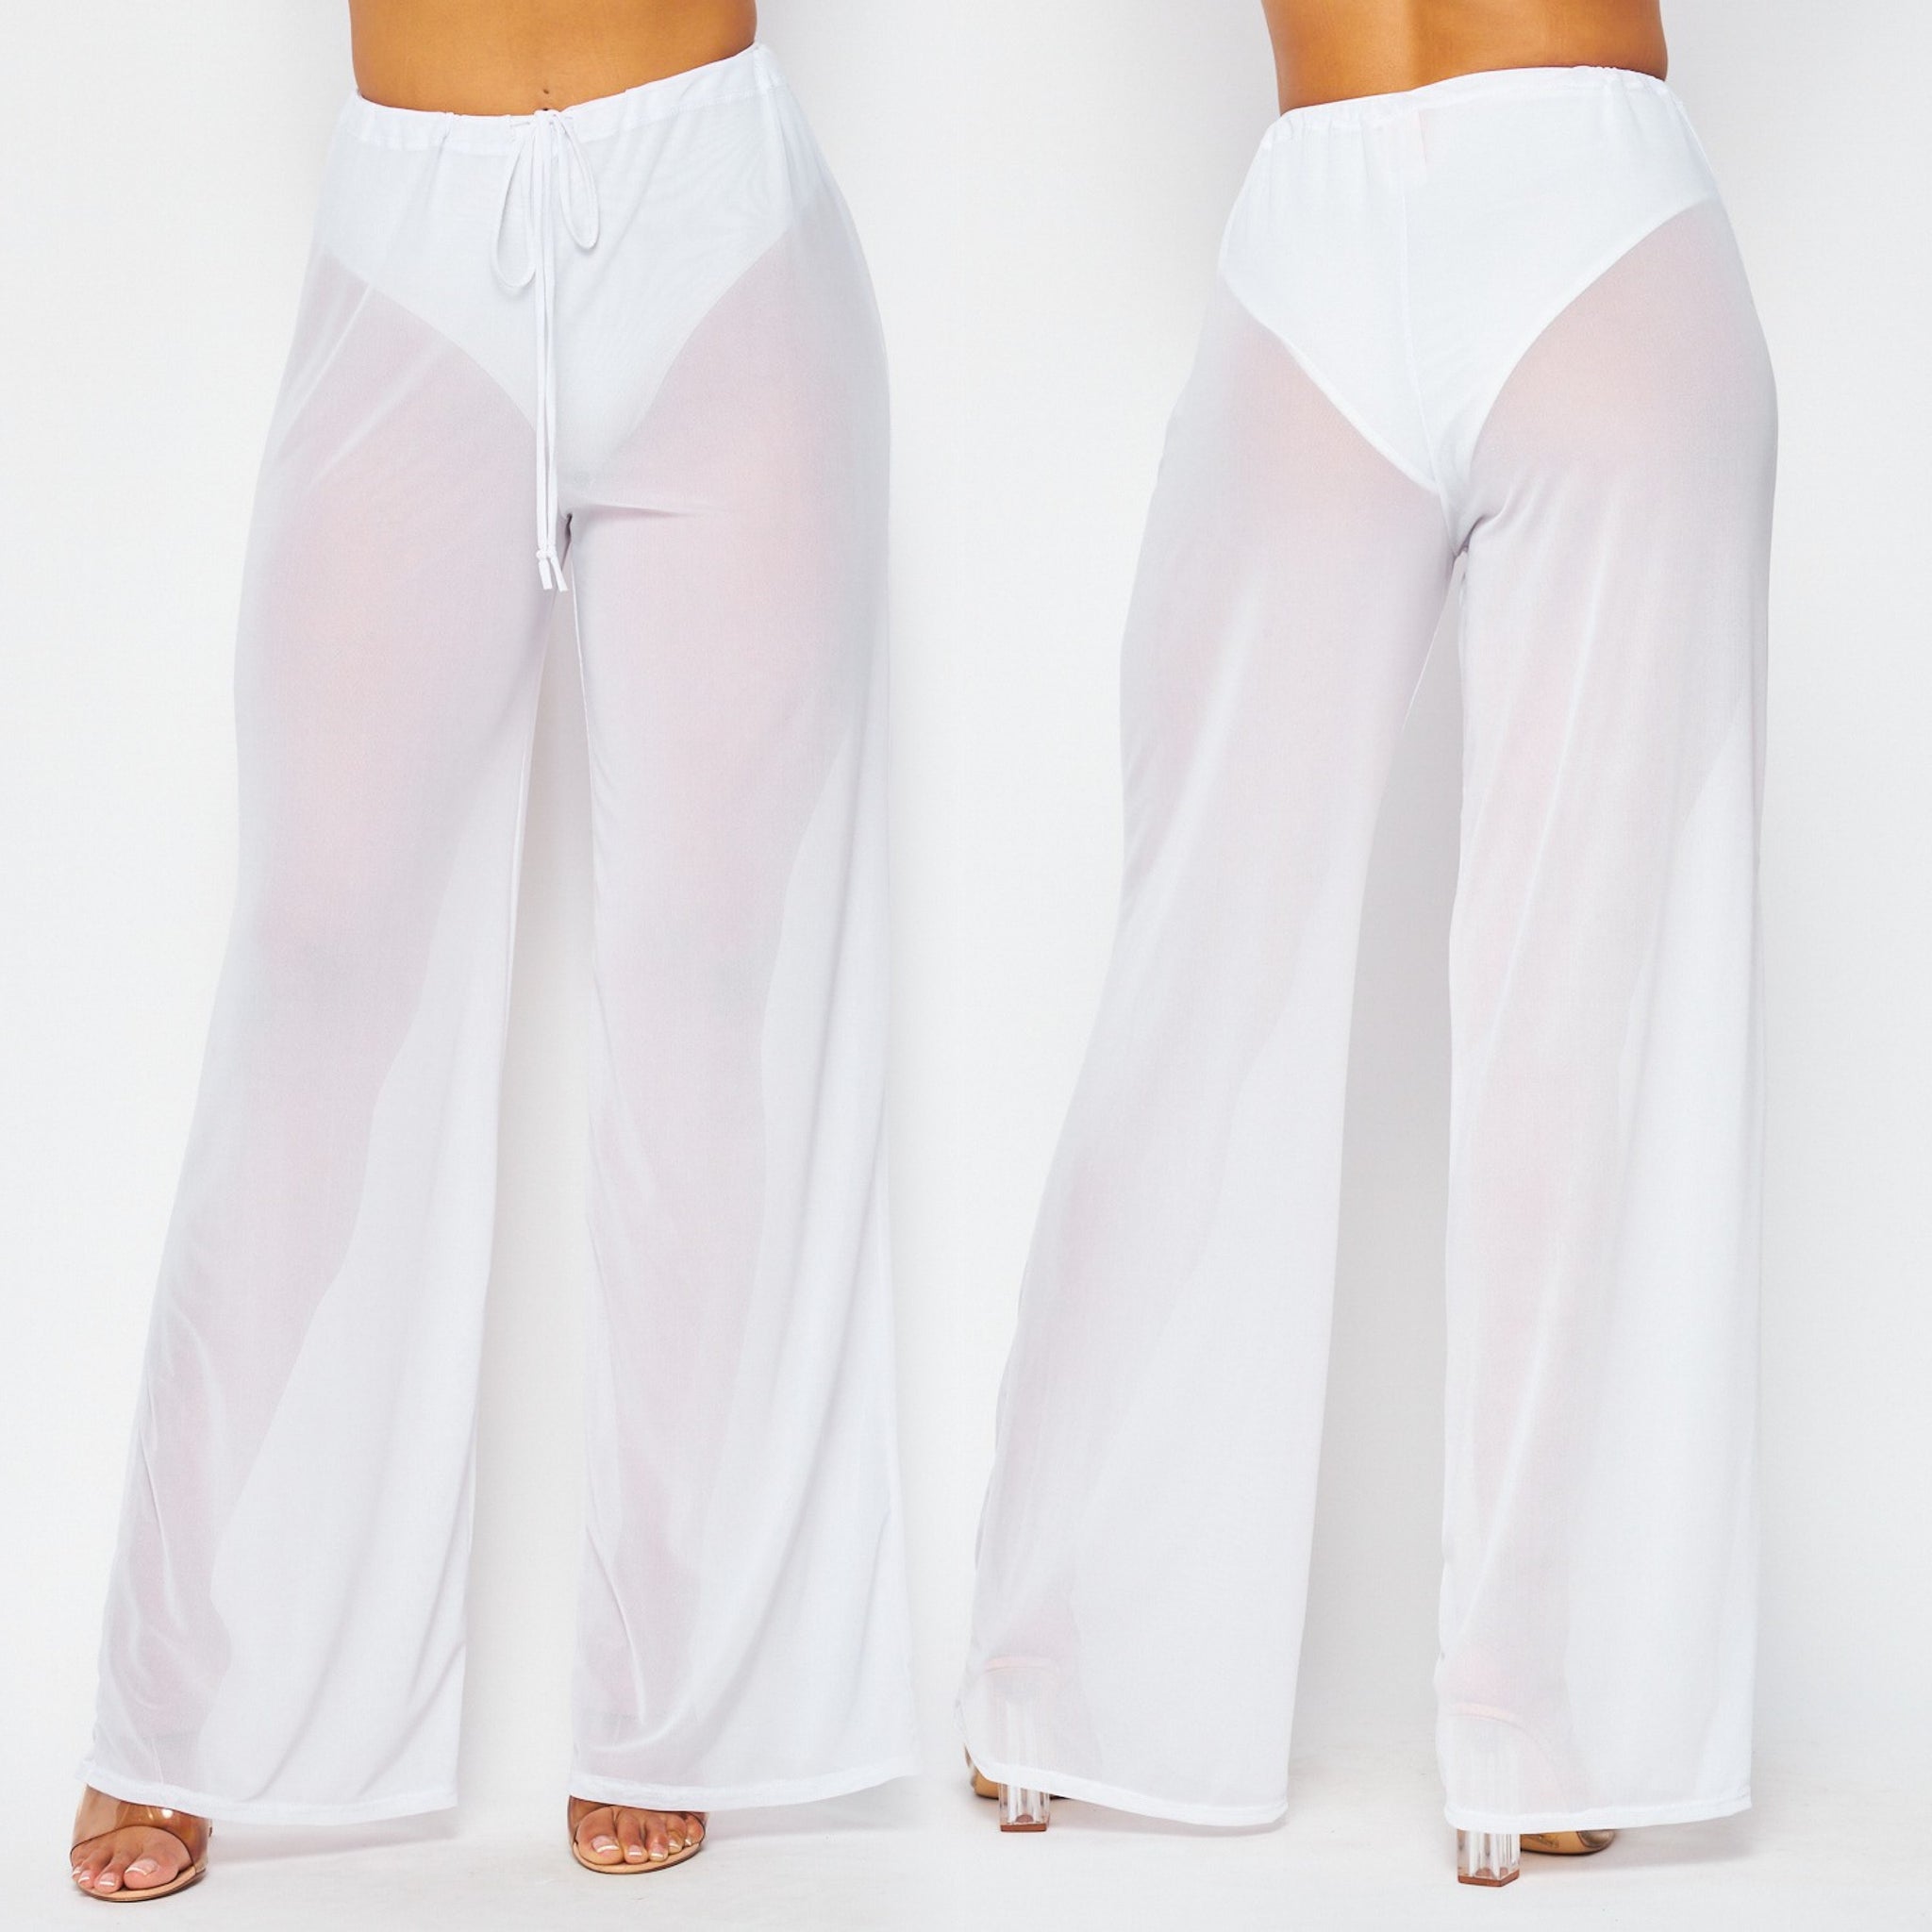 Moxy Miami Pants (White)